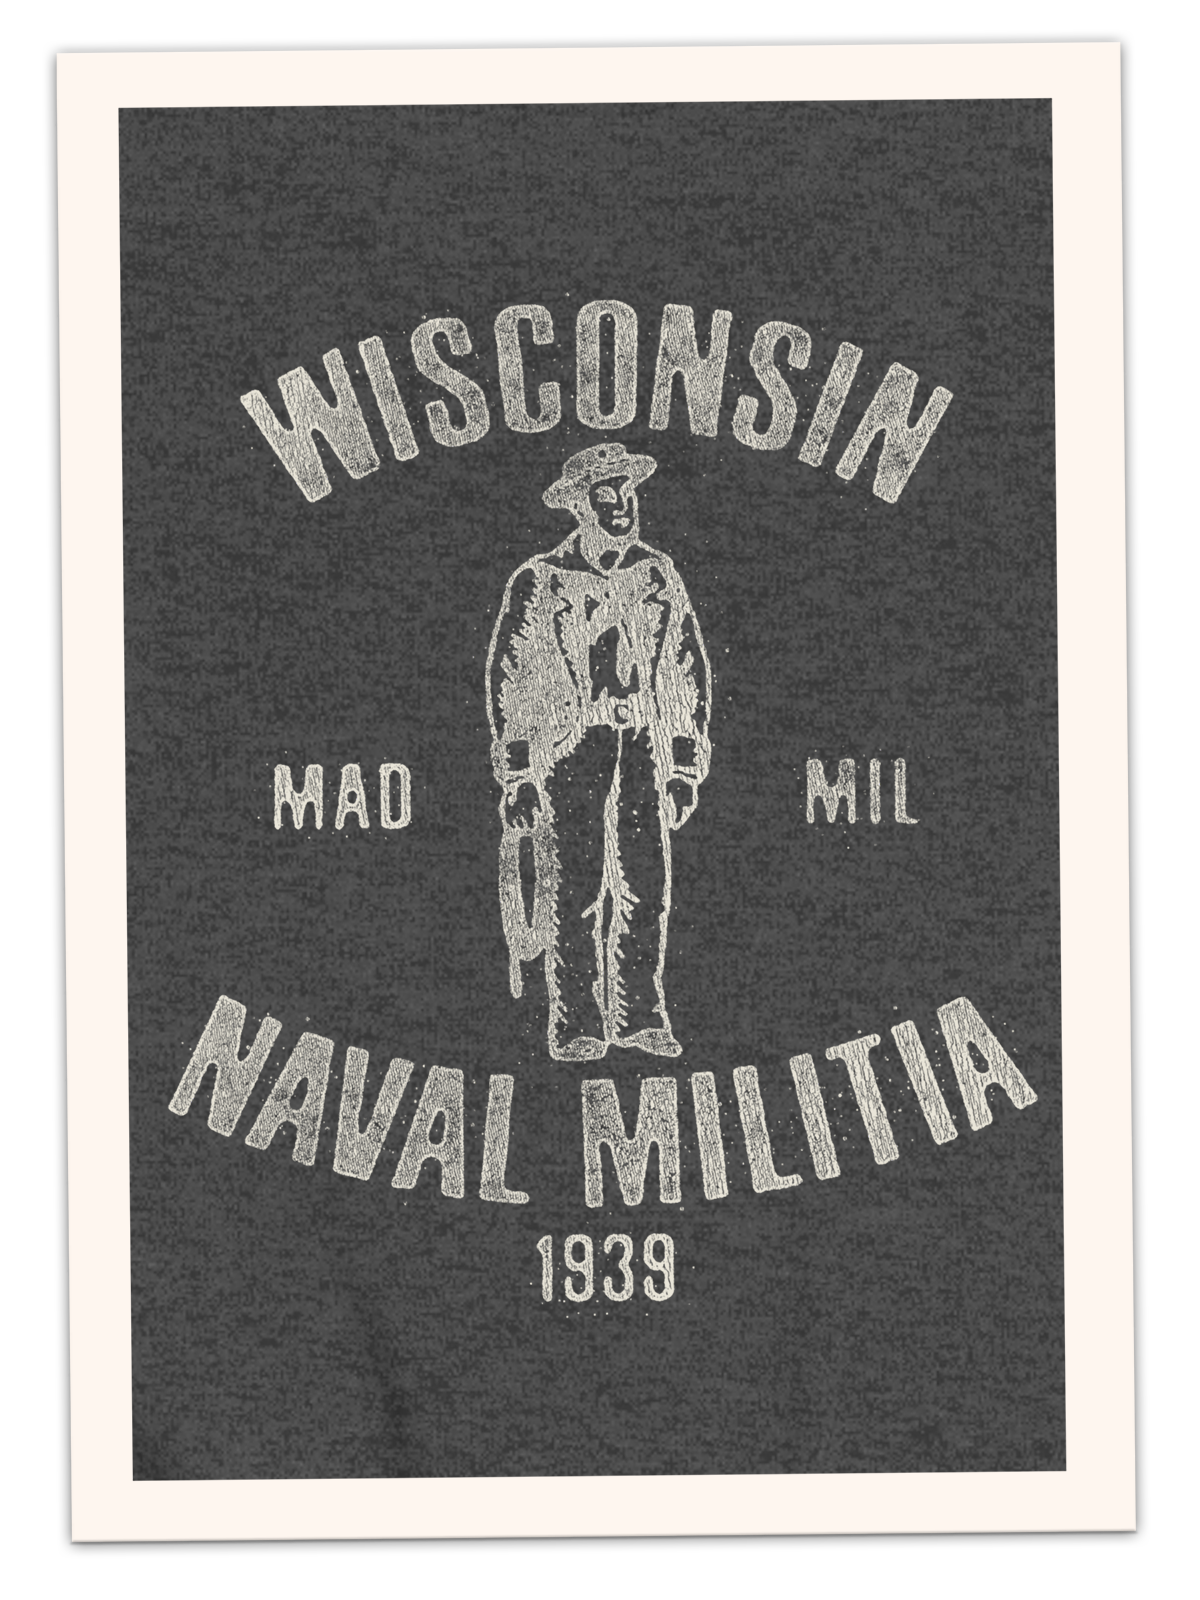 Wisconsin Naval Militia 1939 Adult Crewneck Sweatshirt